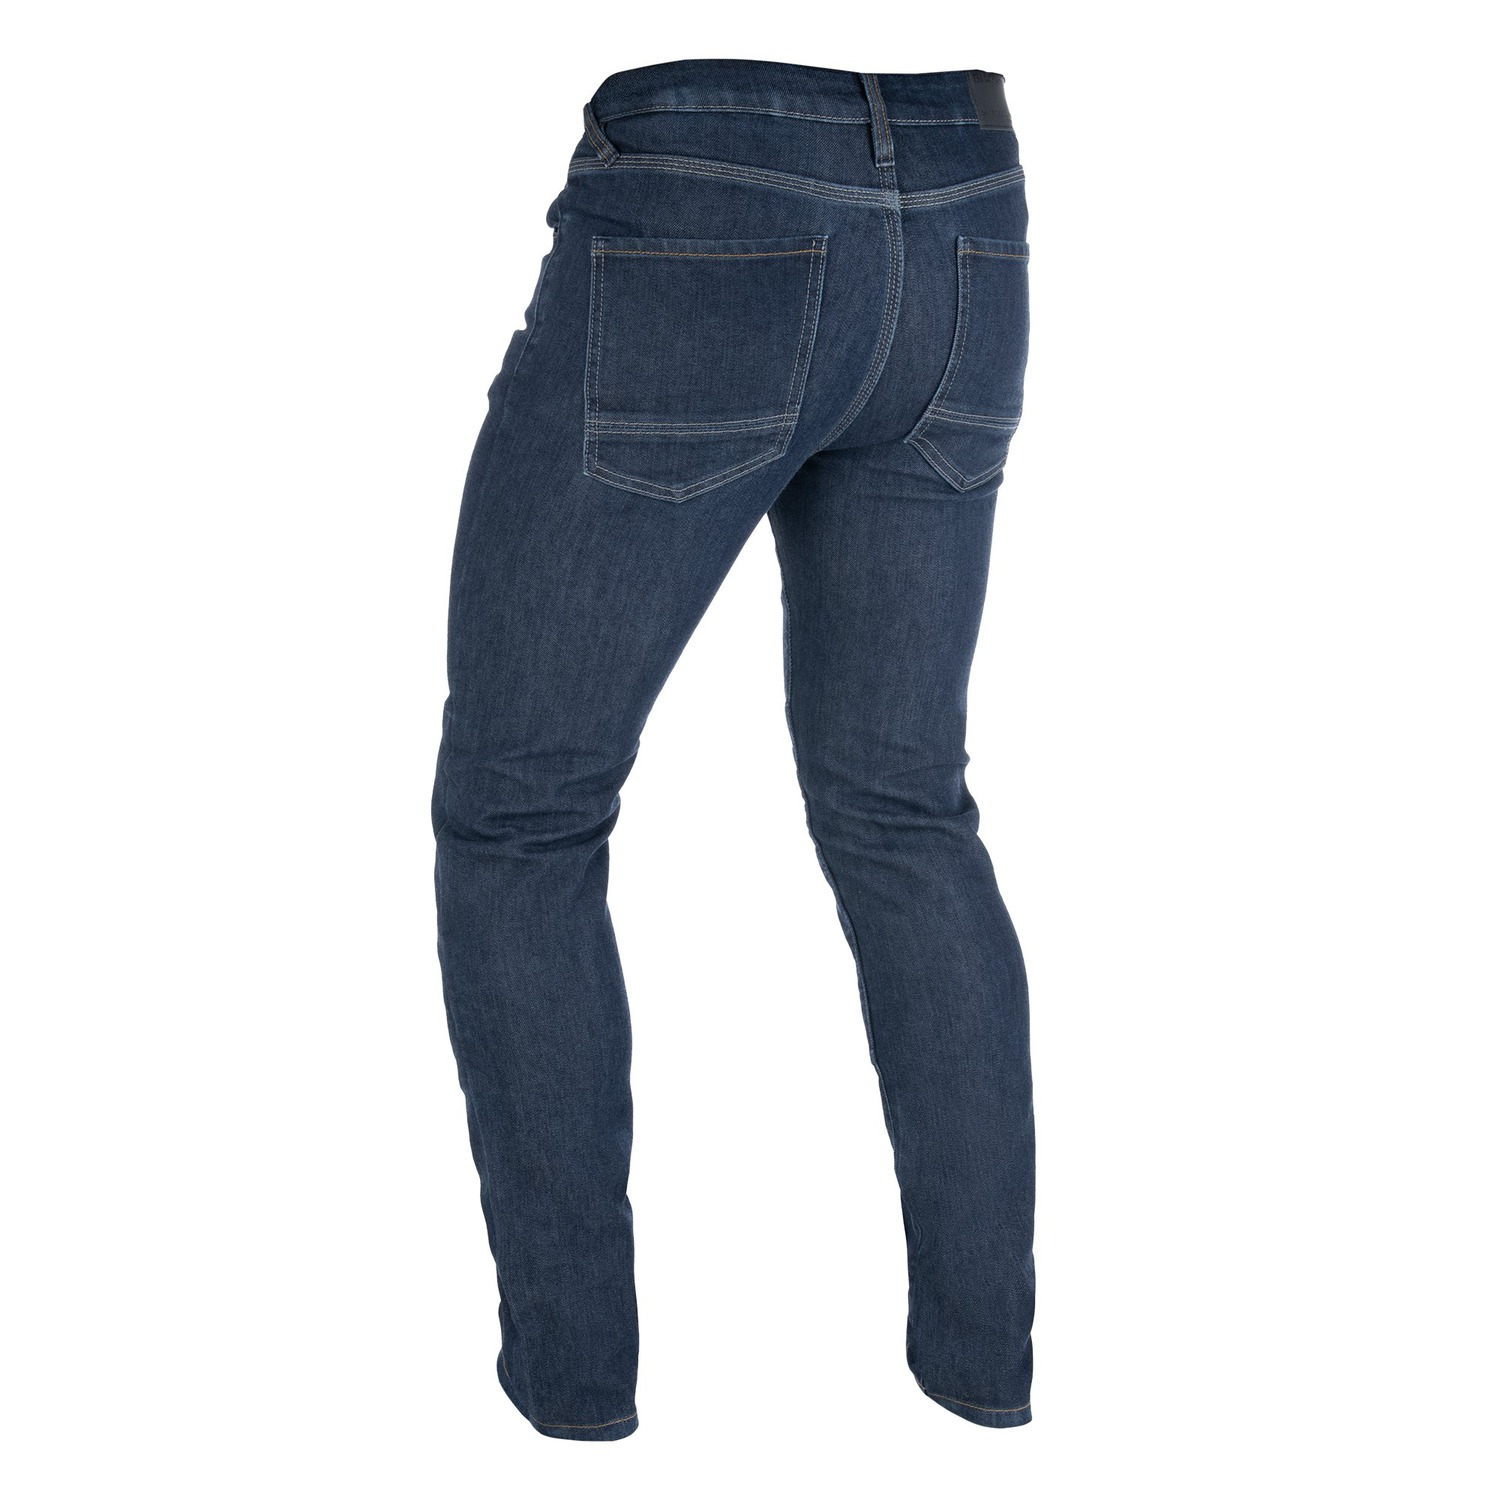 Obrázek produktu kalhoty Original Approved Jeans AA Slim fit, OXFORD, pánské (tmavě modrá indigo)